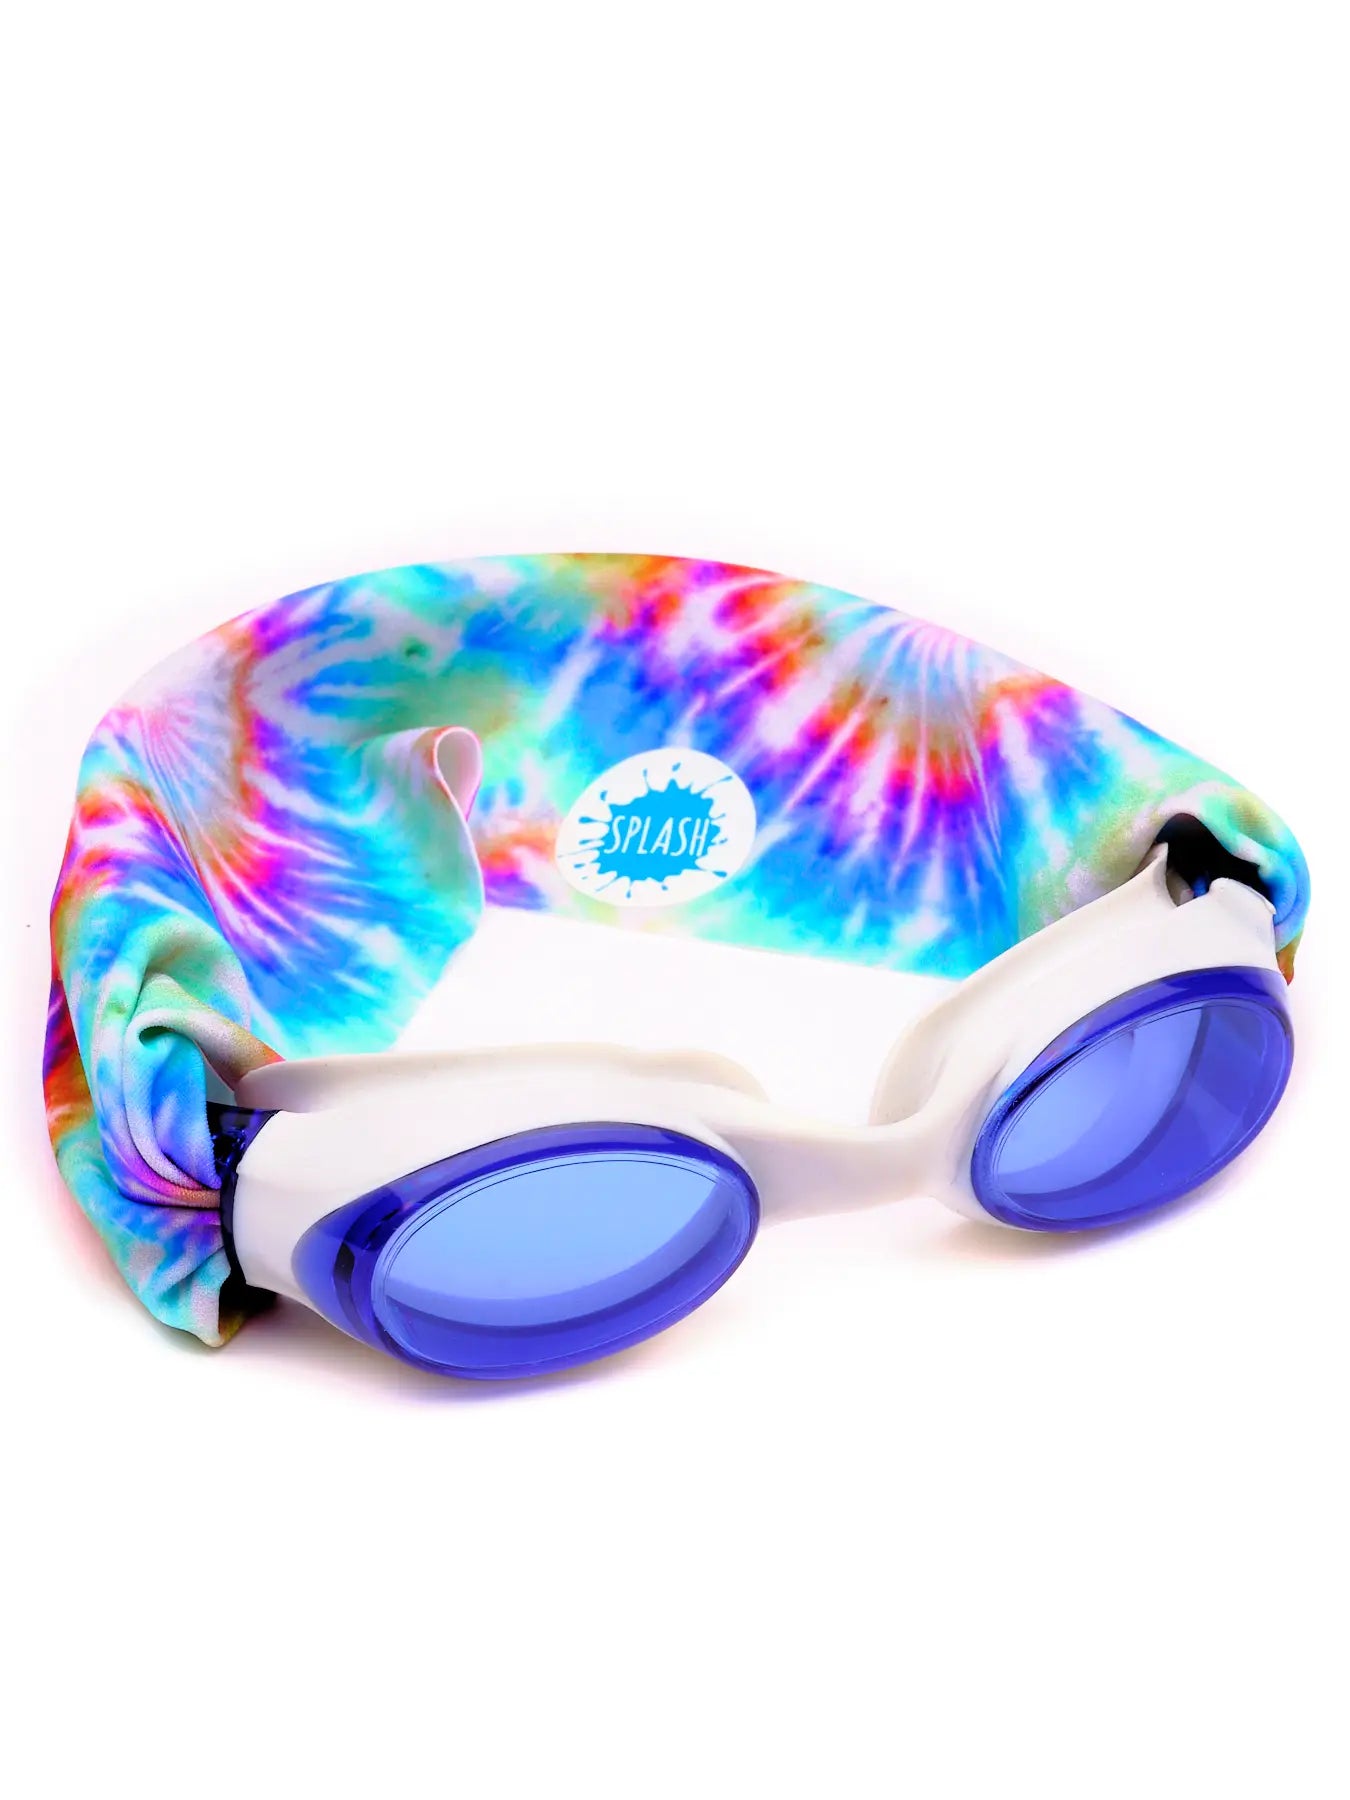 Splash Comfy Strap Swim Goggles